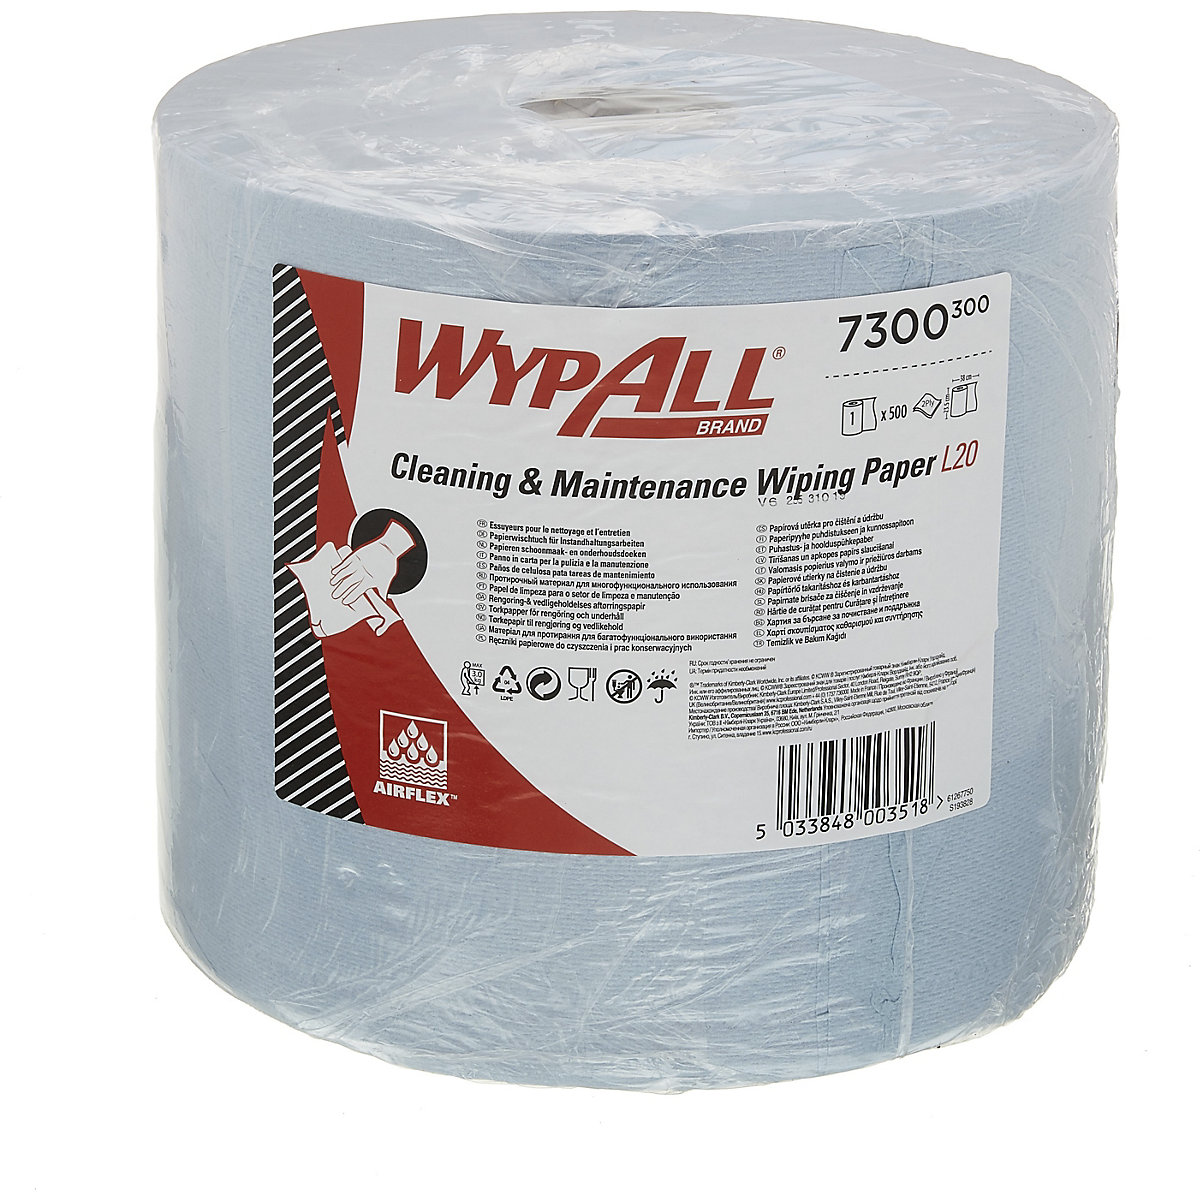 Ręczniki papierowe WypAll®, duża rolka 7300 – Kimberly-Clark